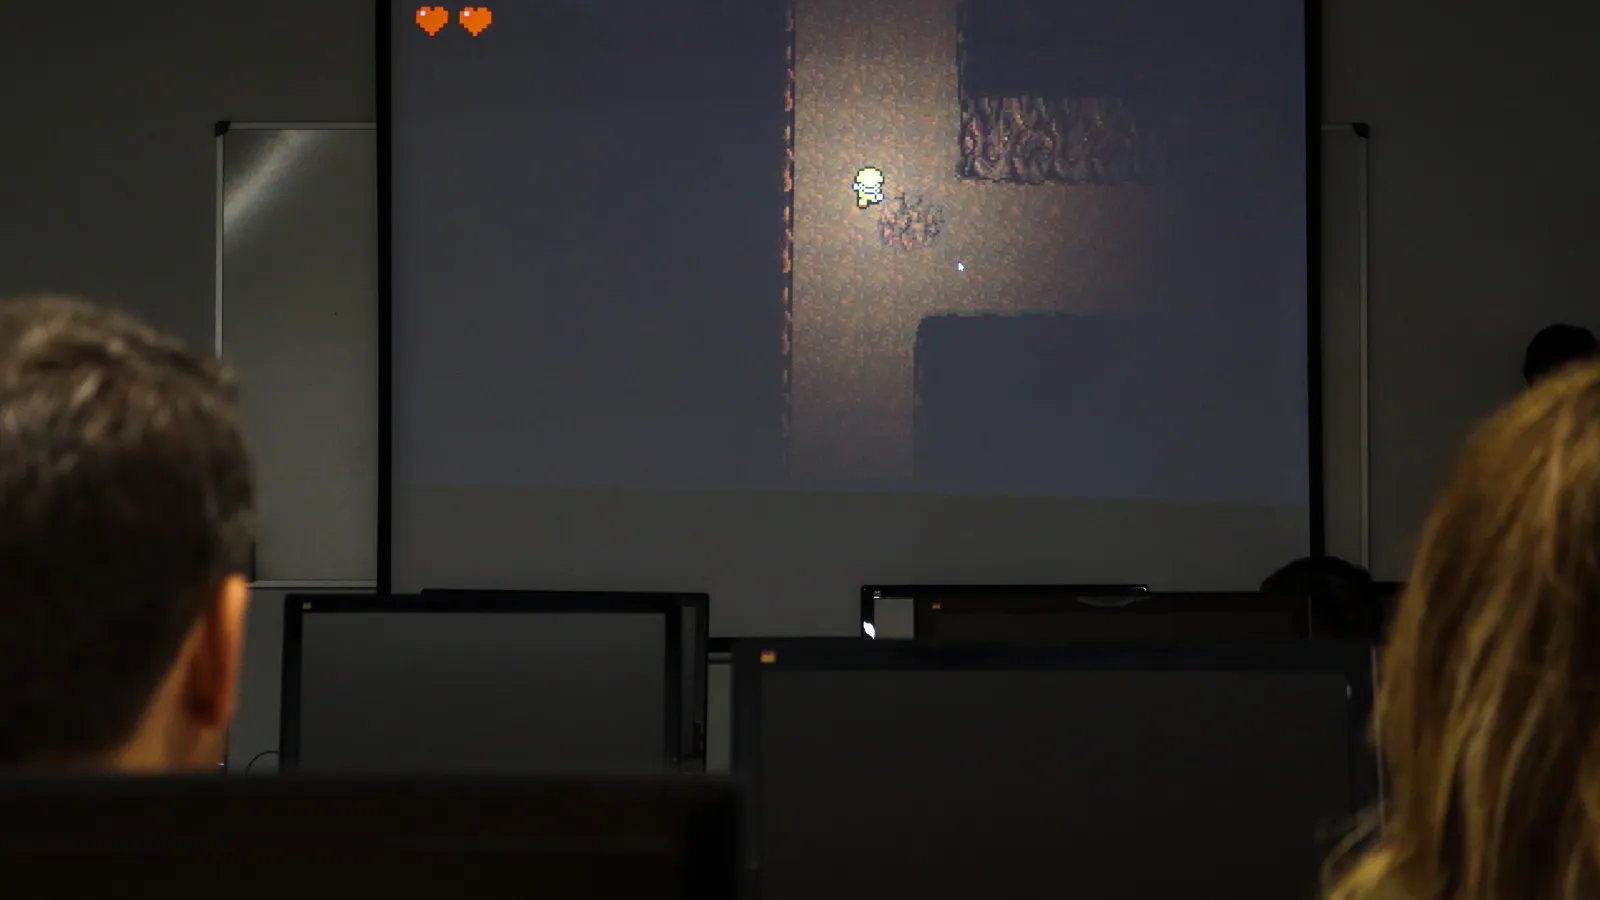 Resultado final de uno de los proyectos muestra un personaje en una mazmorra con un entorno oscuro.